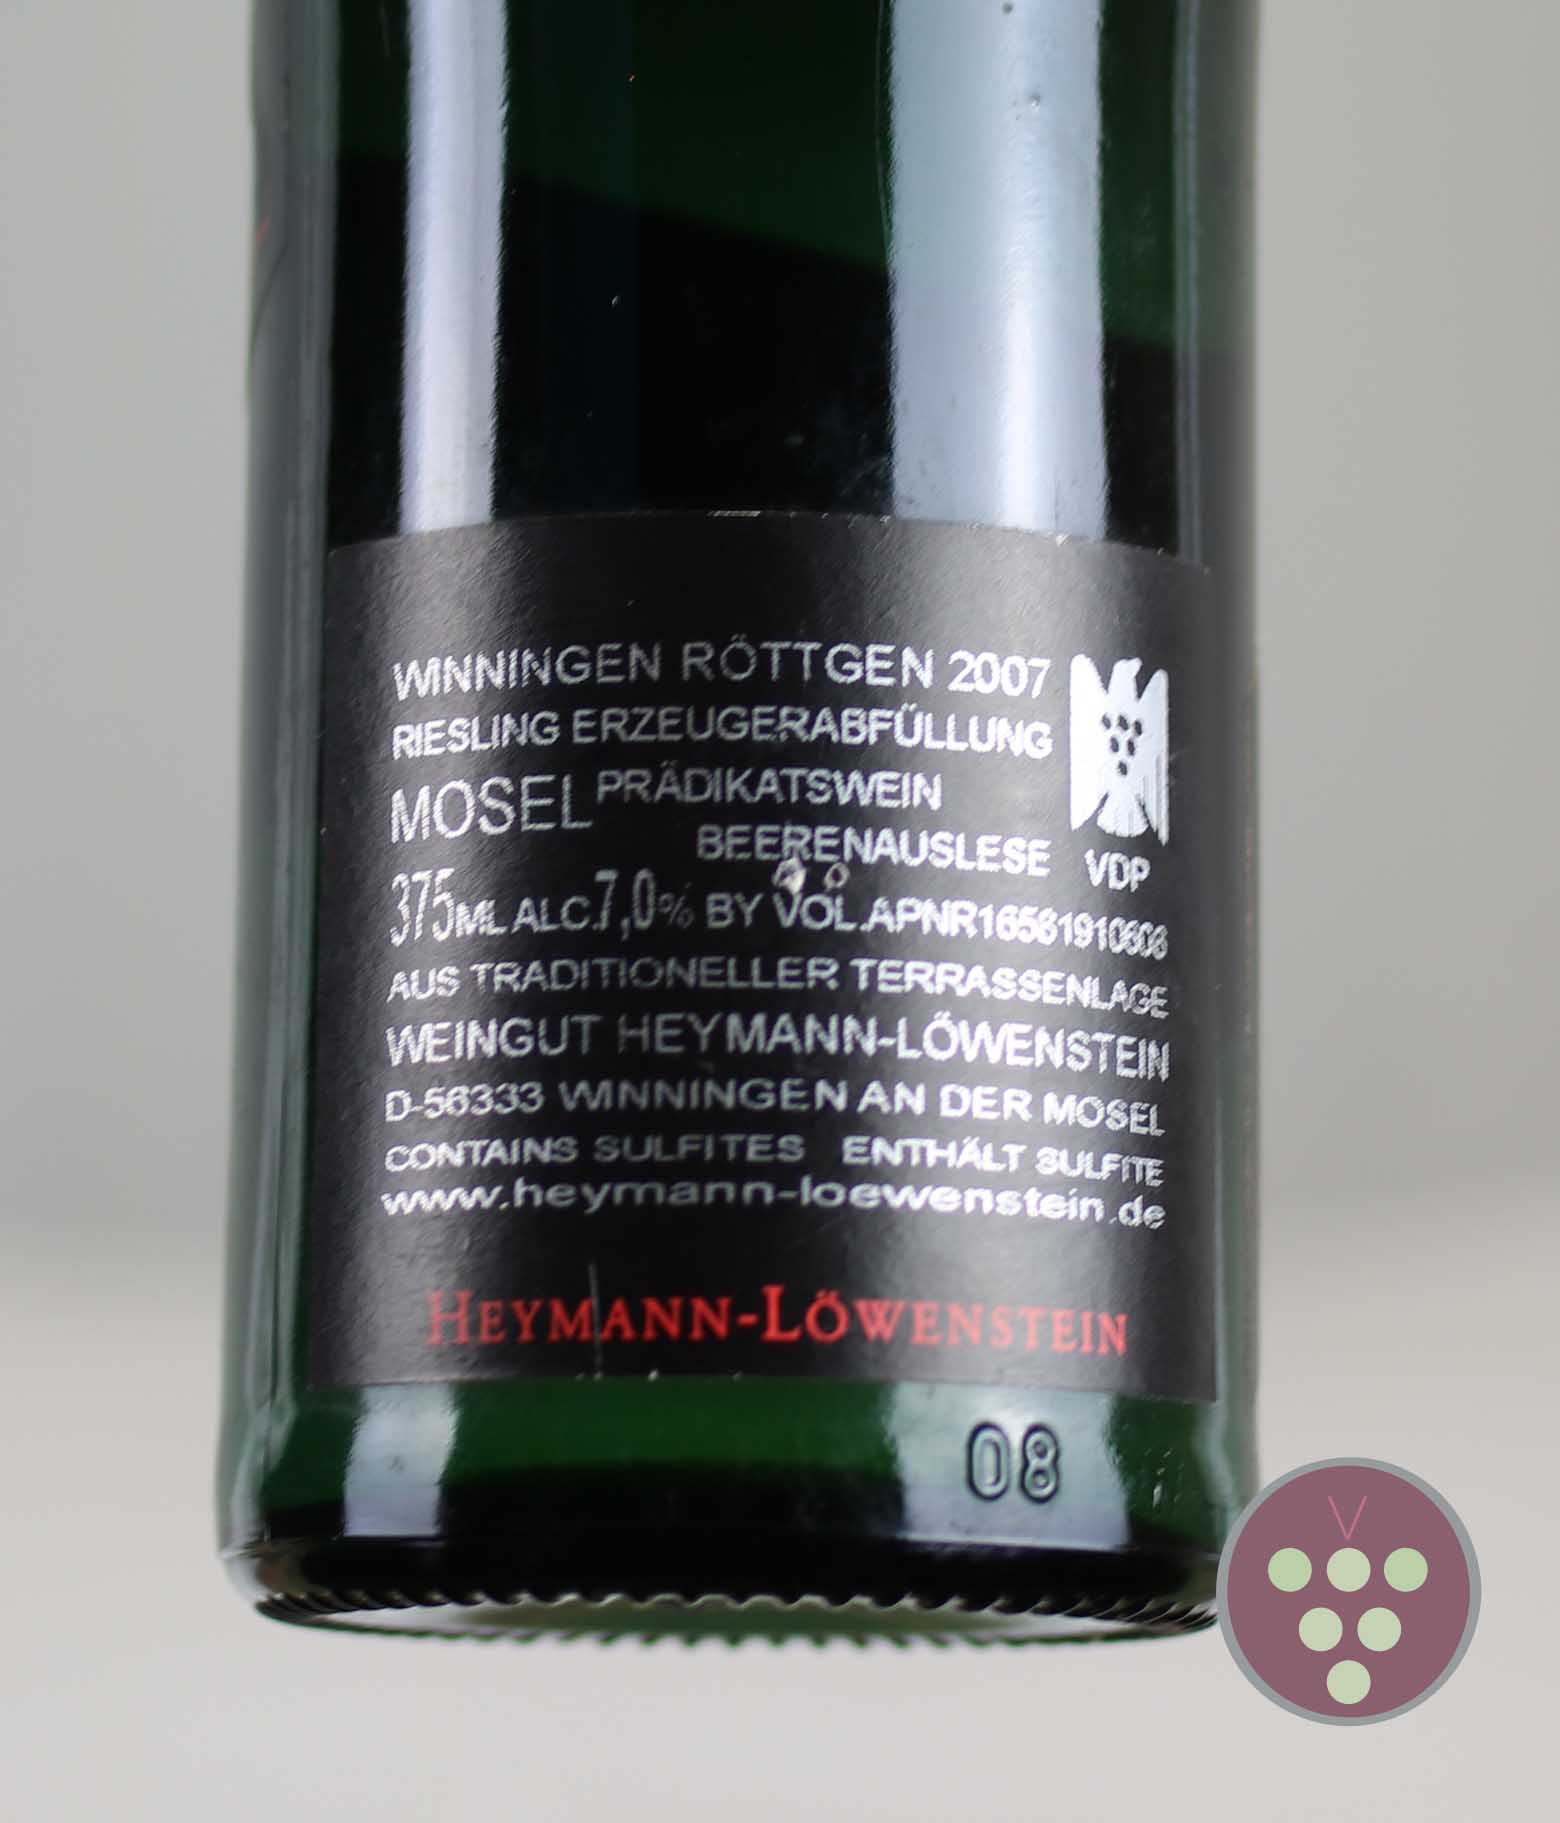 Heymann-Löwenstein | "VDP.Erste Lage" Beerenauslese 2007 - Winningen Röttgen